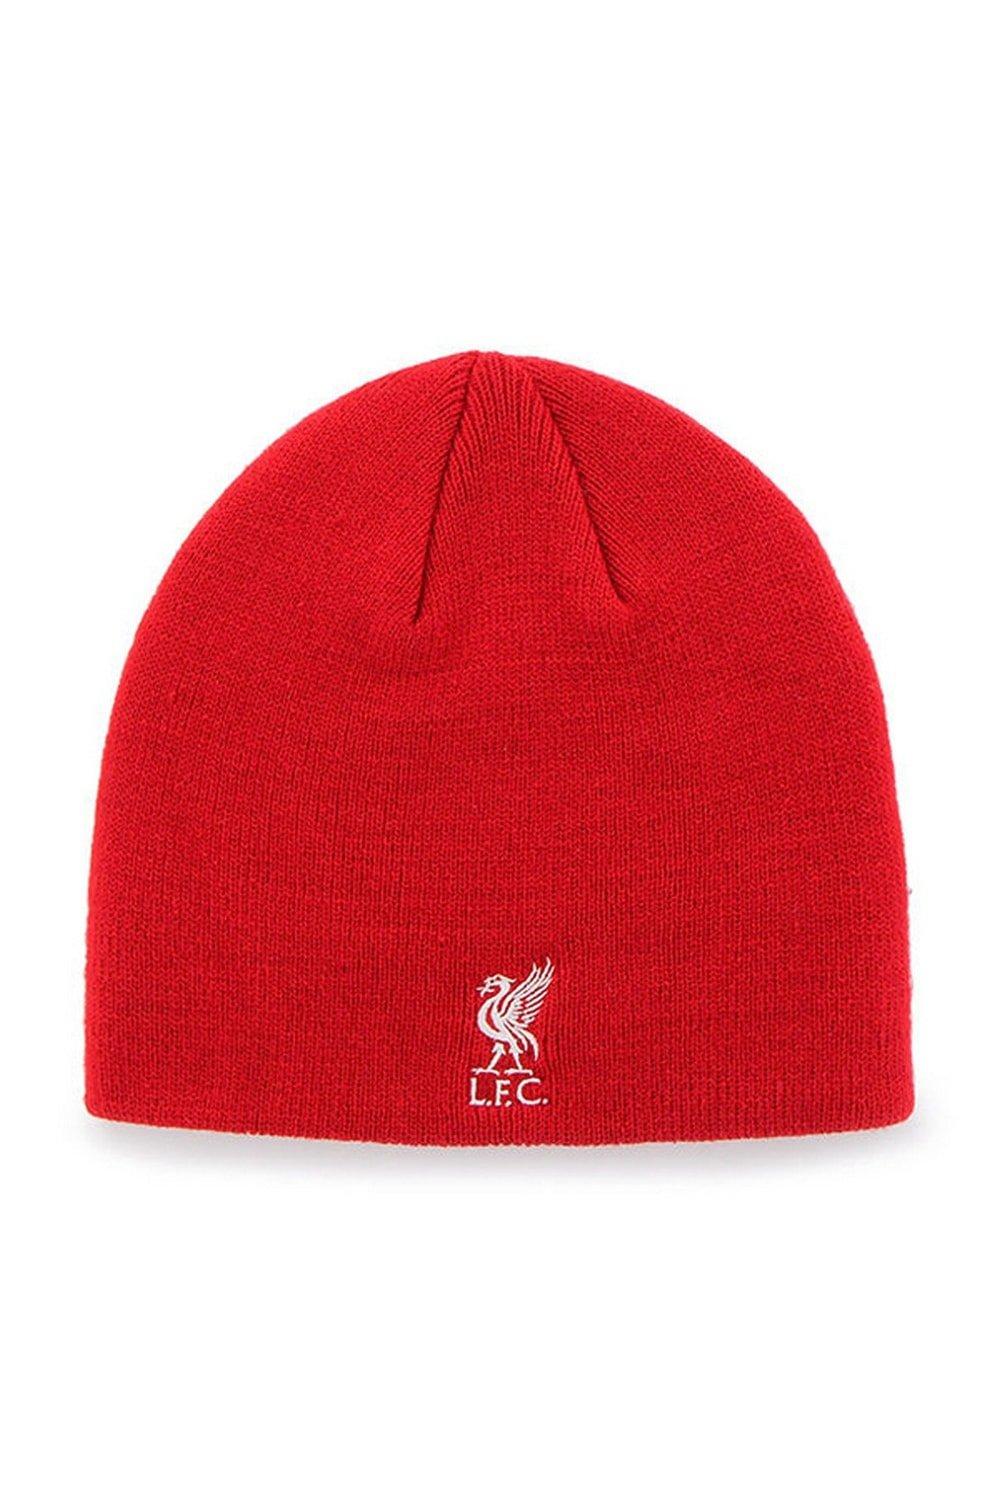 Официальная вязаная шапка Liverpool FC, красный шапка бини для мужчин вязаная шапка модная женская толстая шерстяная шапка шарф балаклава маска шляпа набор шапок